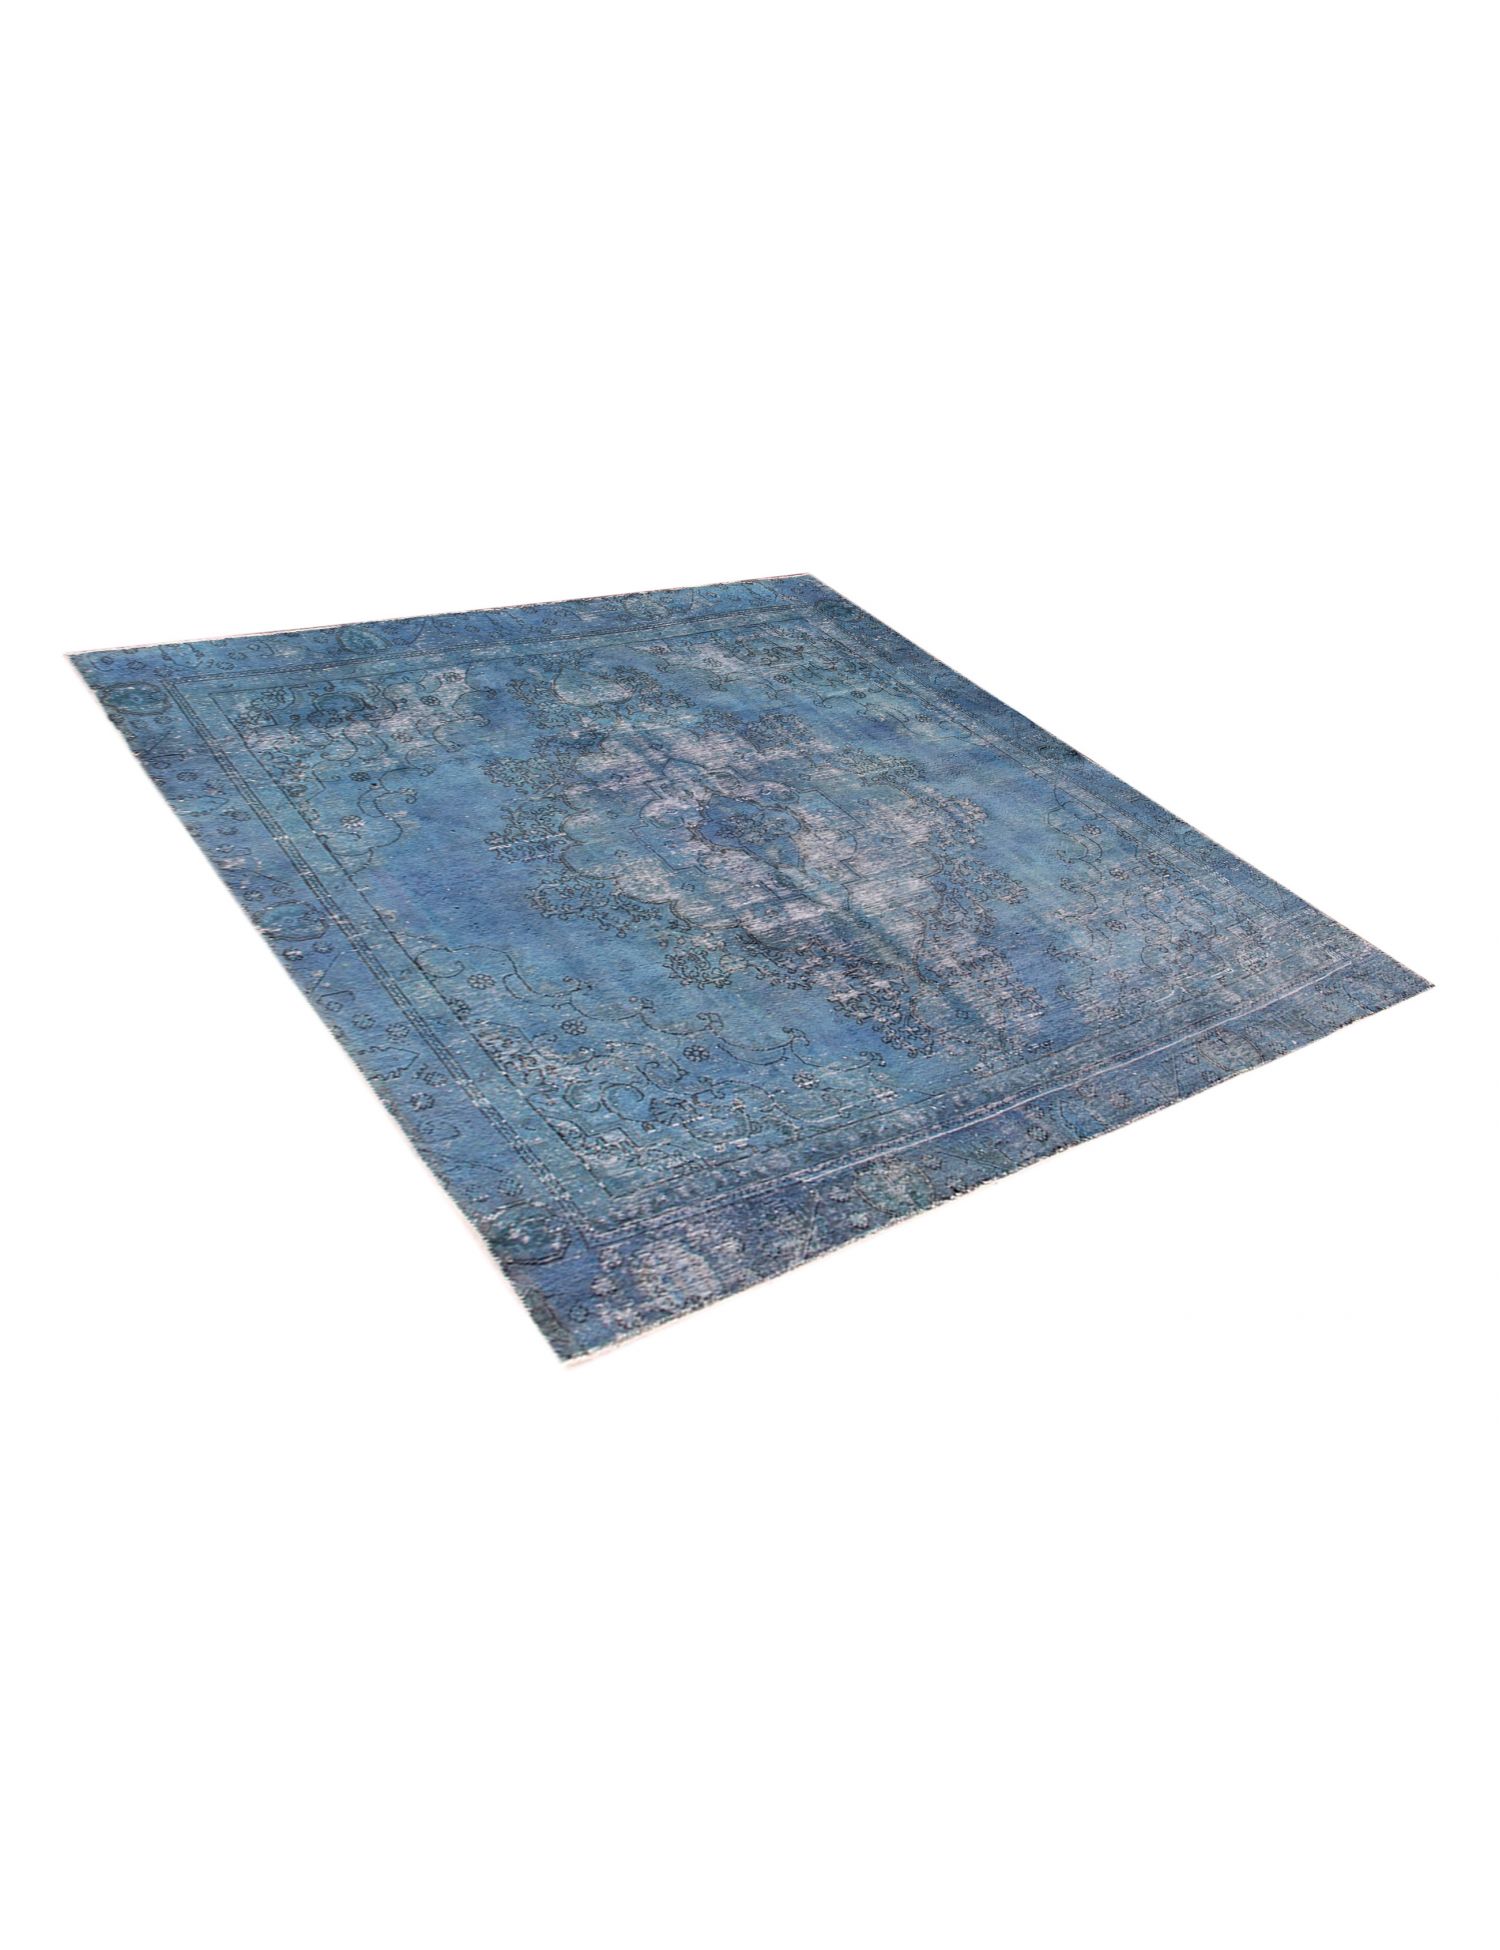 Persian Vintage Carpet  blue <br/>260 x 265 cm